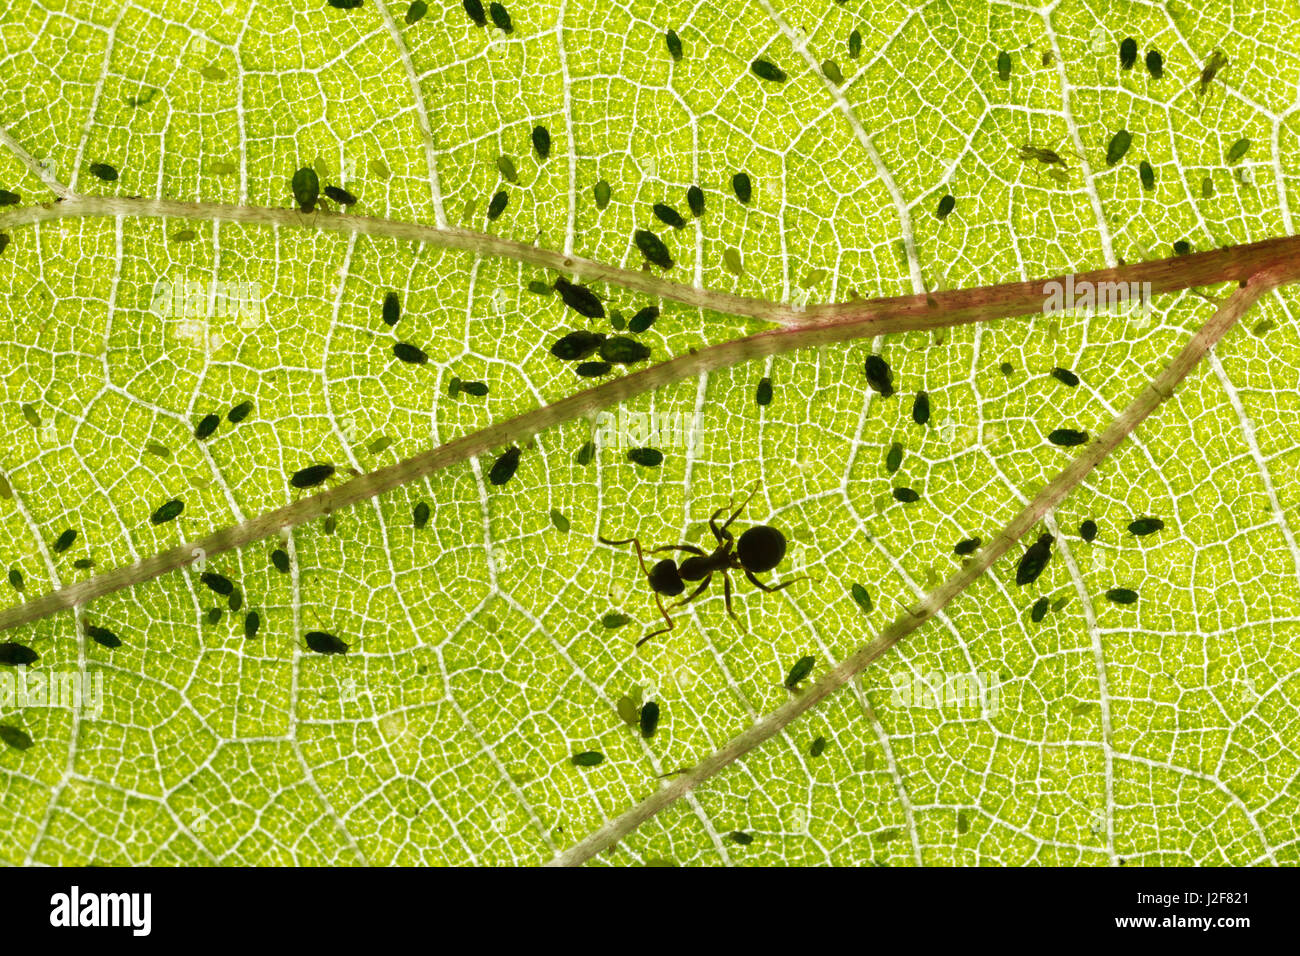 Schwarzer Garten Ameise auf Brennnessel-Blatt mit Blattlaus Kolonie Stockfoto